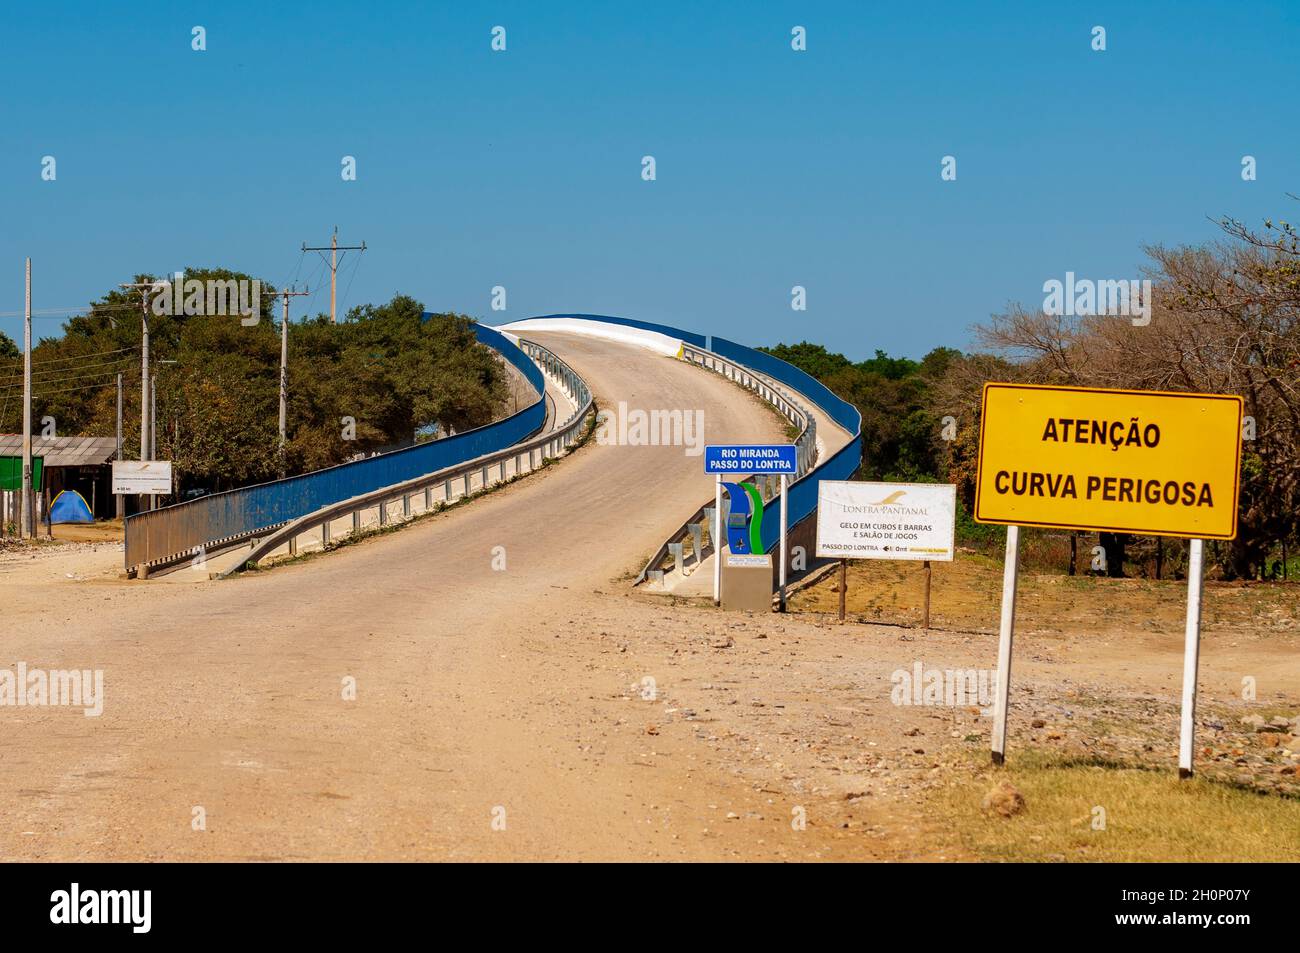 Concrete bridge over Miranda river at Passo do Lontra in the Estrada Parque, the road that crosses south of the Pantanal, Mato Grosso do Sul, Brazil Stock Photo